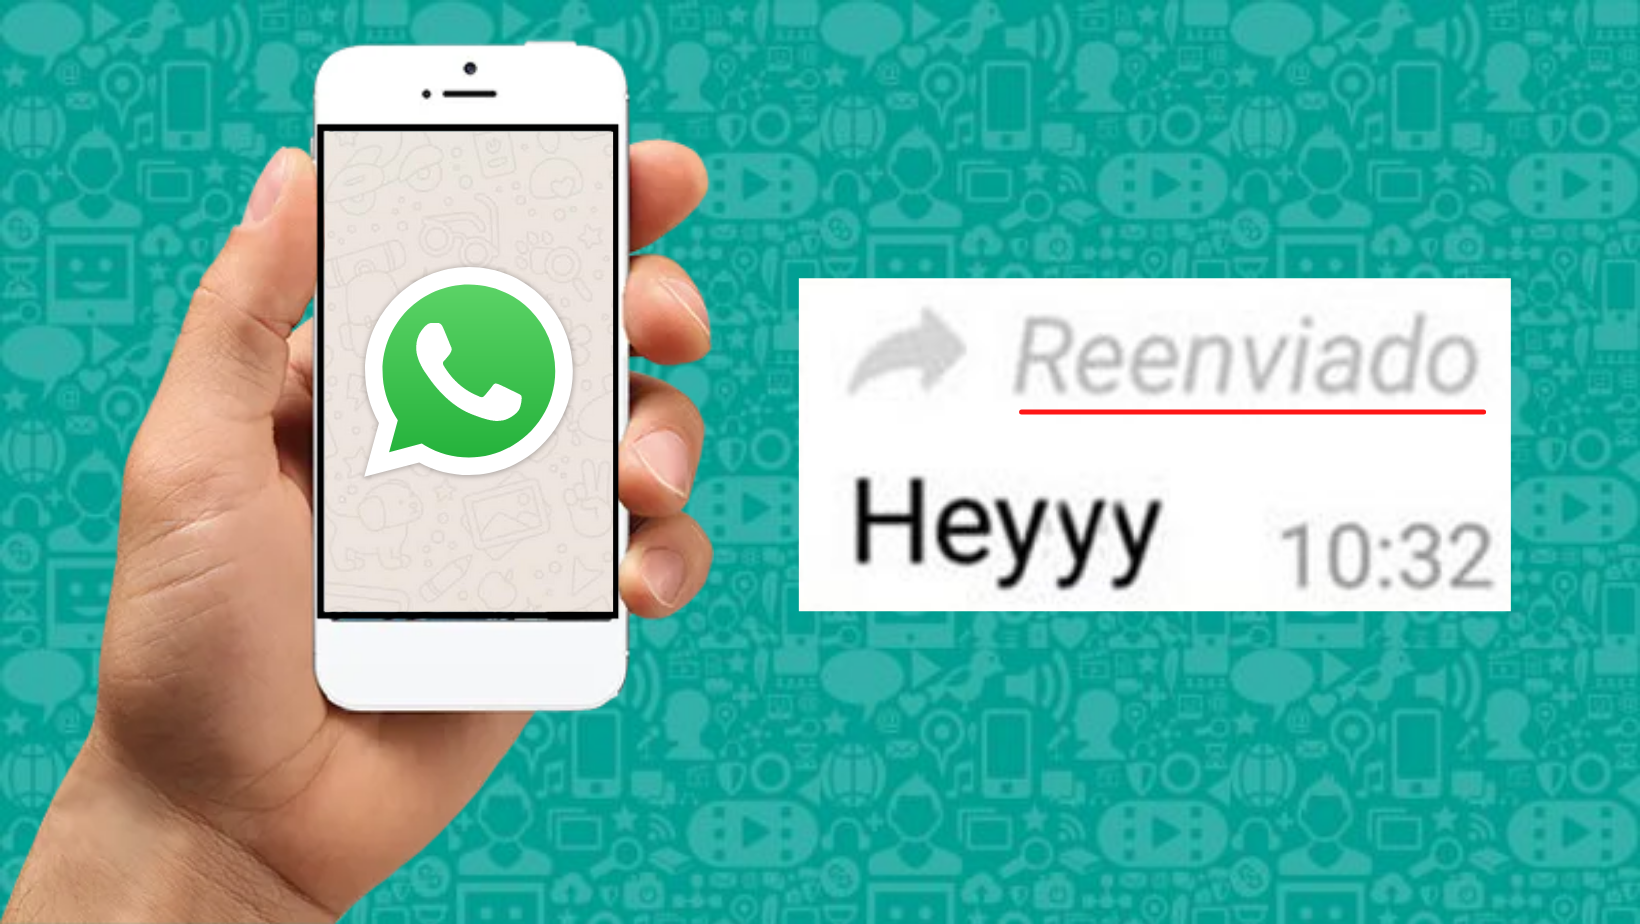 Truco De Whatsapp Así Puedes Reenviar Un Mensaje Sin Que Aparezca La Etiqueta De Reenviado 7836